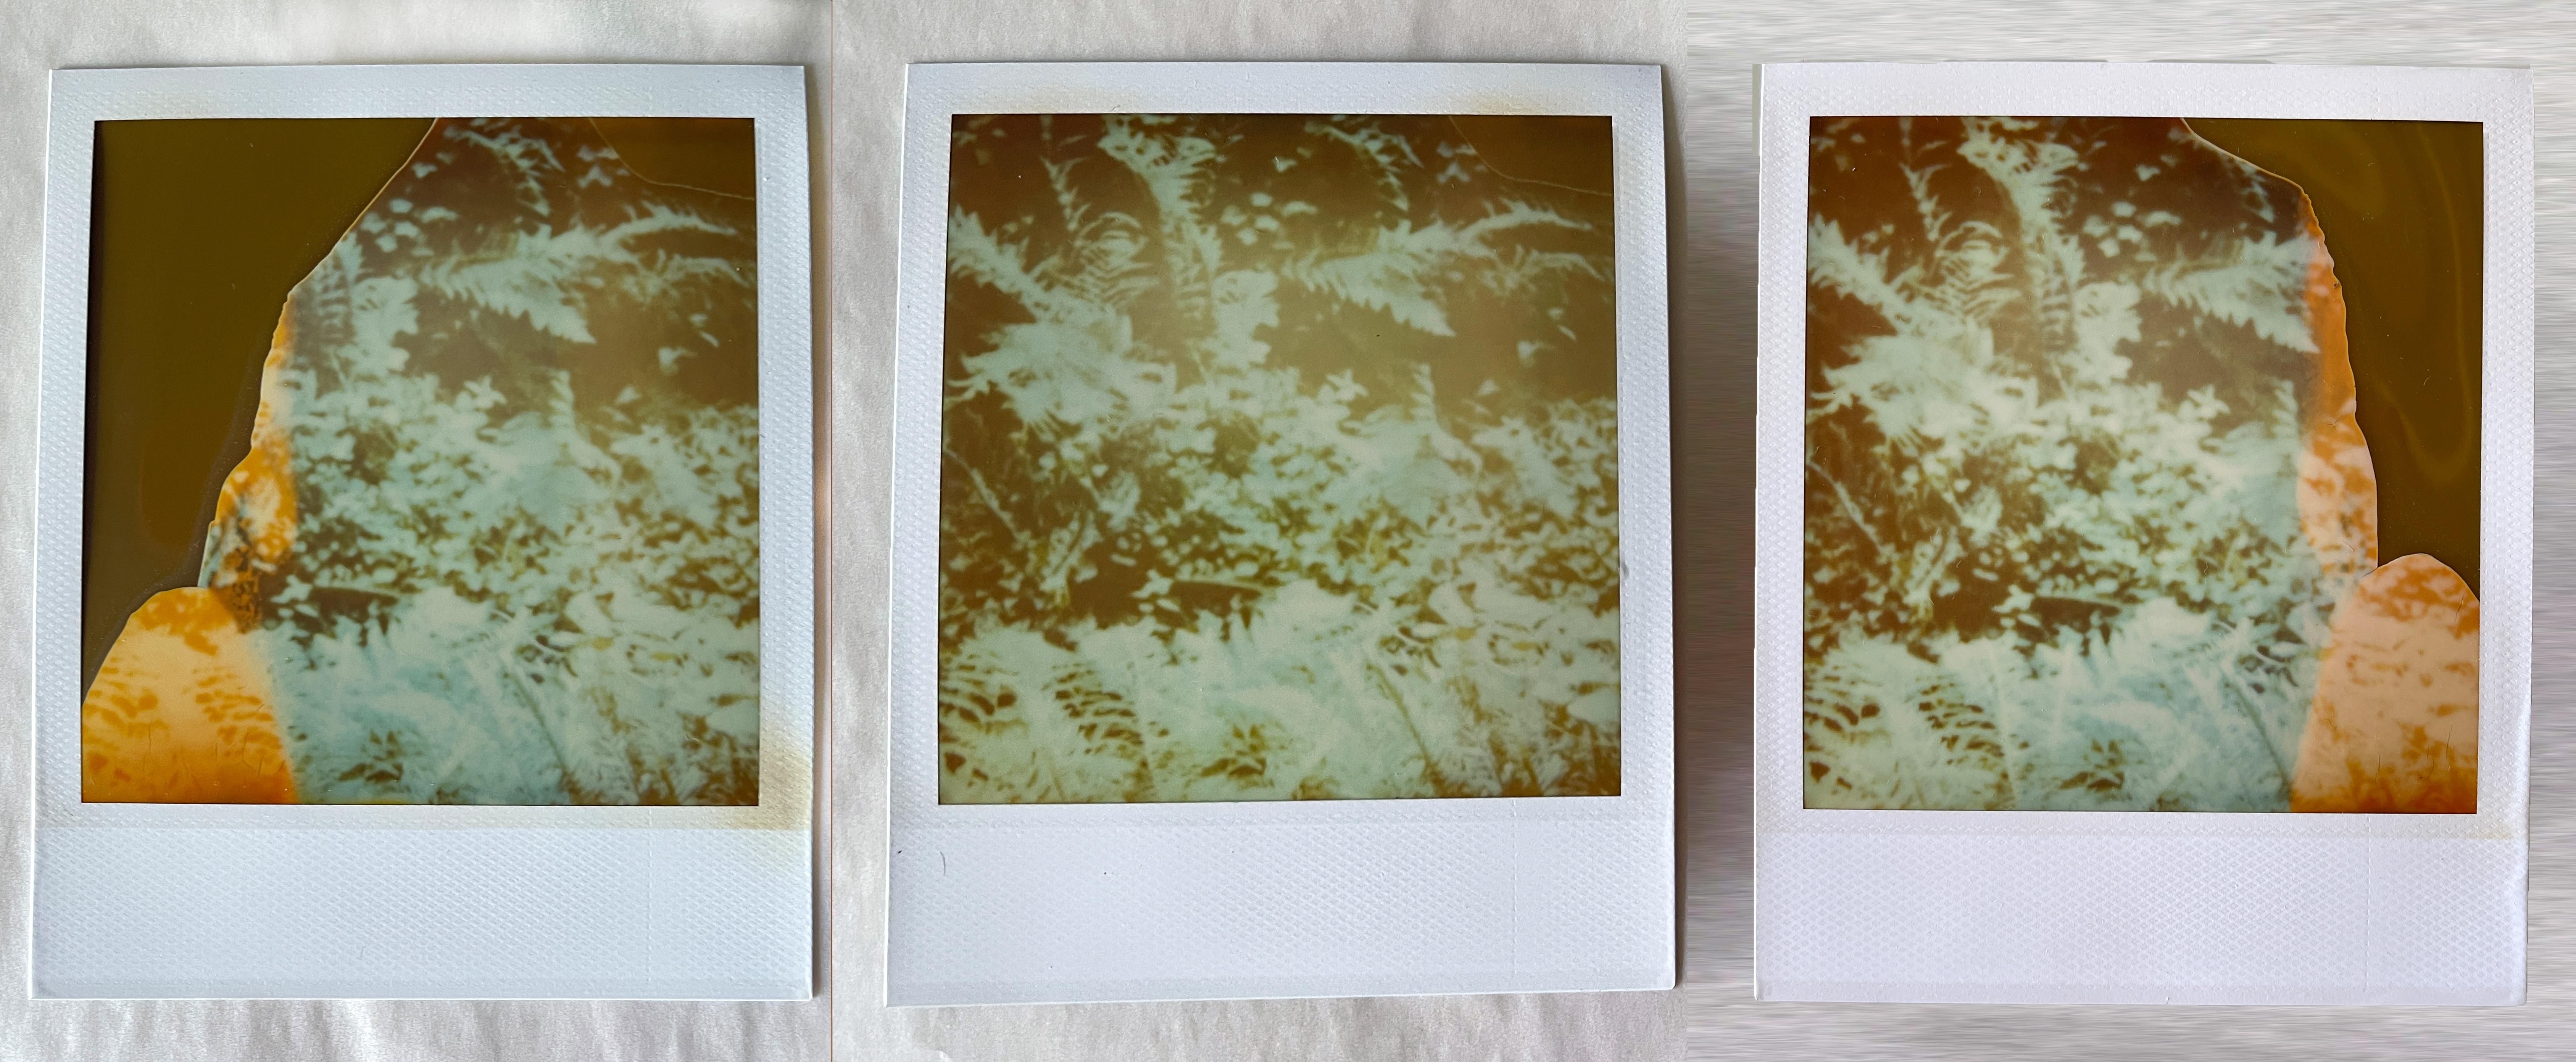 Stefanie Schneider Portrait Photograph - Fairytales, triptych - 3 Original Polaroids - Unique pieces